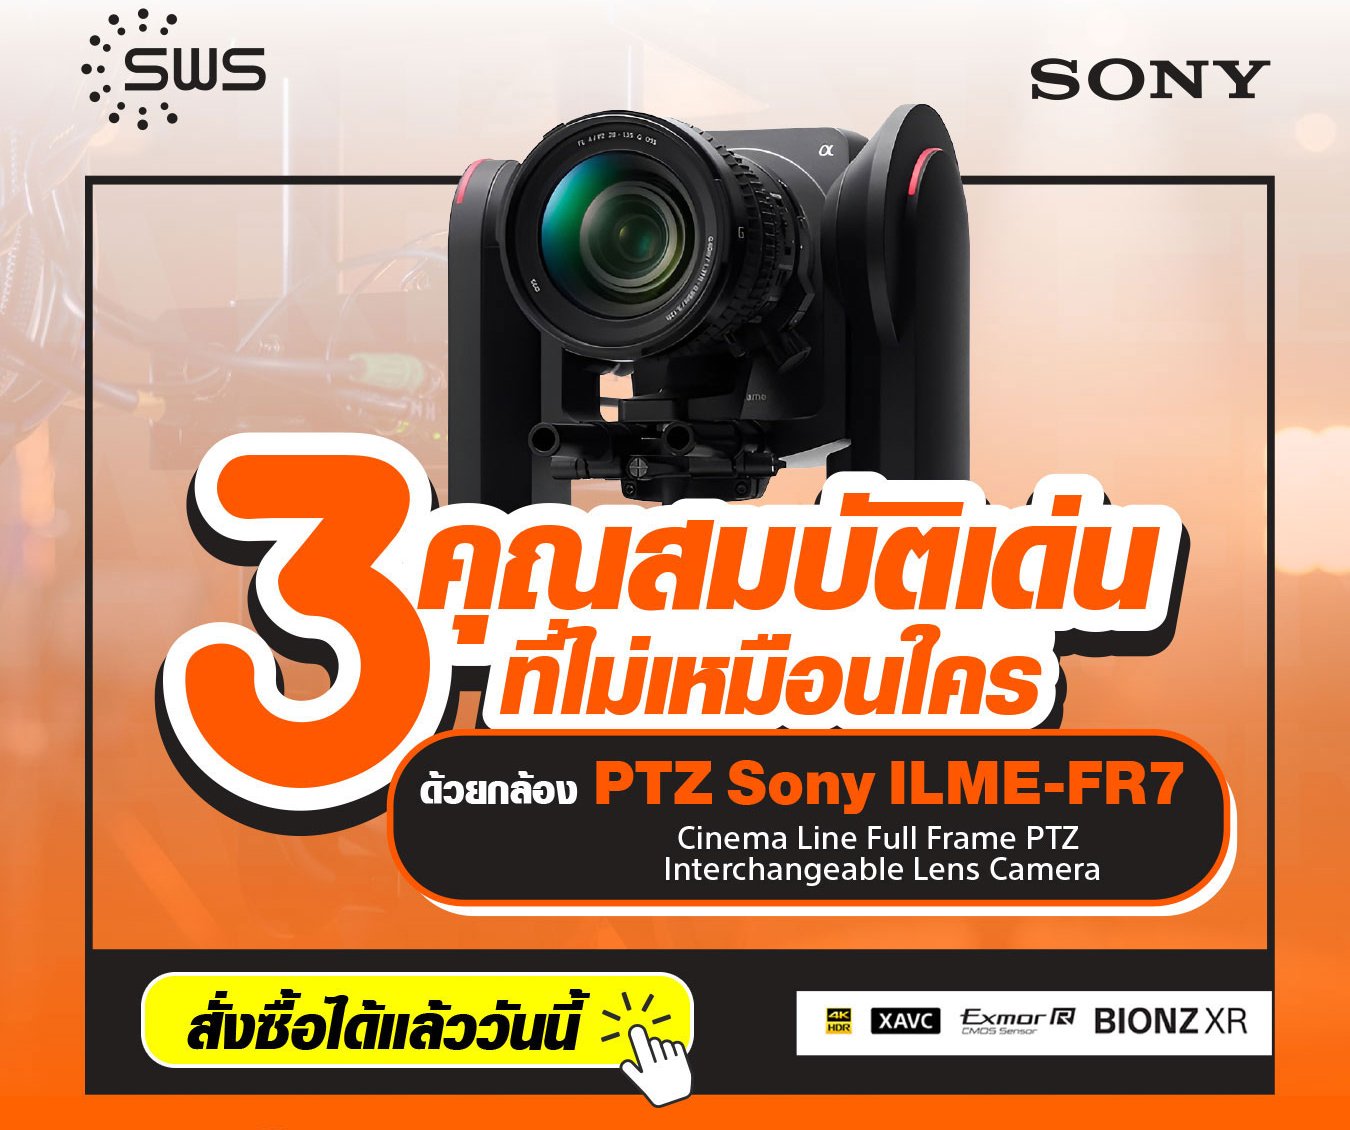 3 เหตุผลที่กล้อง Sony FR7 จะเปลี่ยนวงการงานโปรดักชั่นไปอย่างสิ้นเชิง